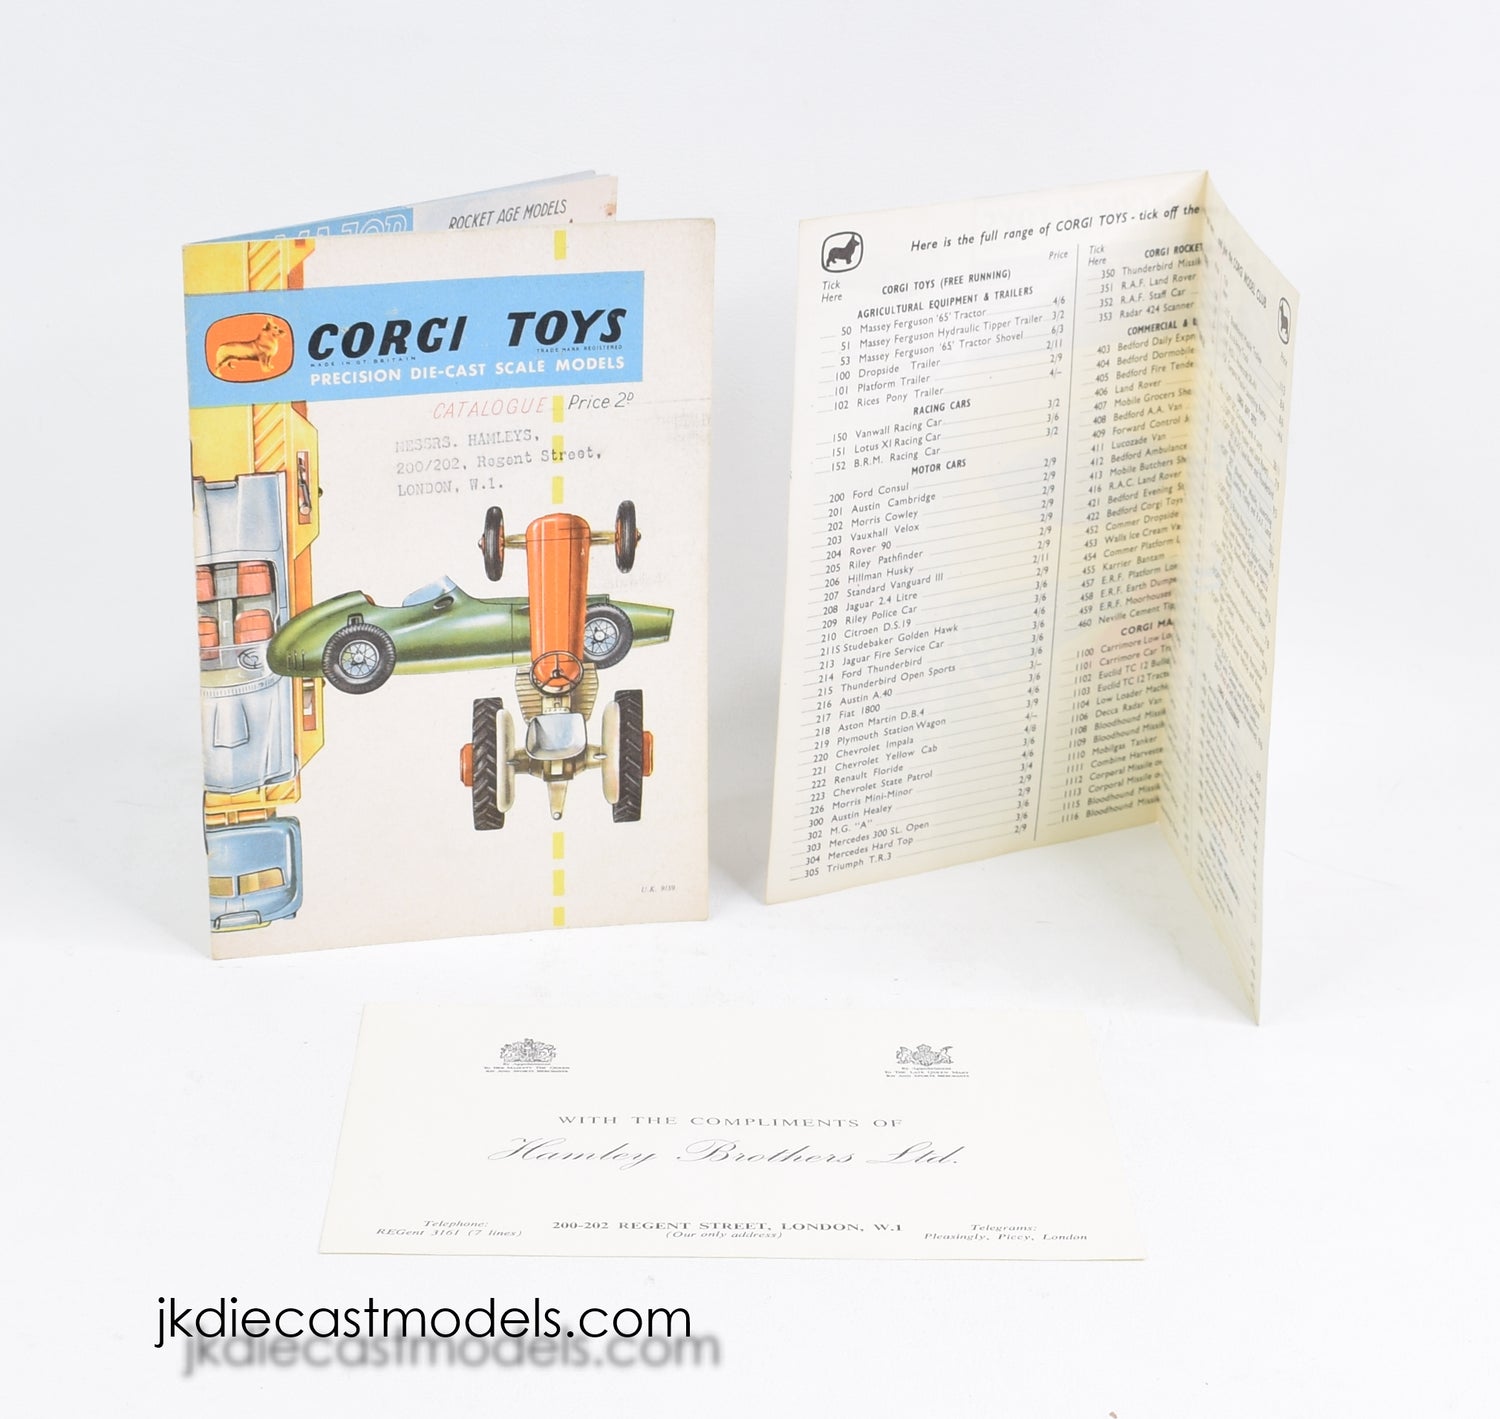 Corgi toys 'Hamleys' 1959 Catalogue 'Dryden Collection'